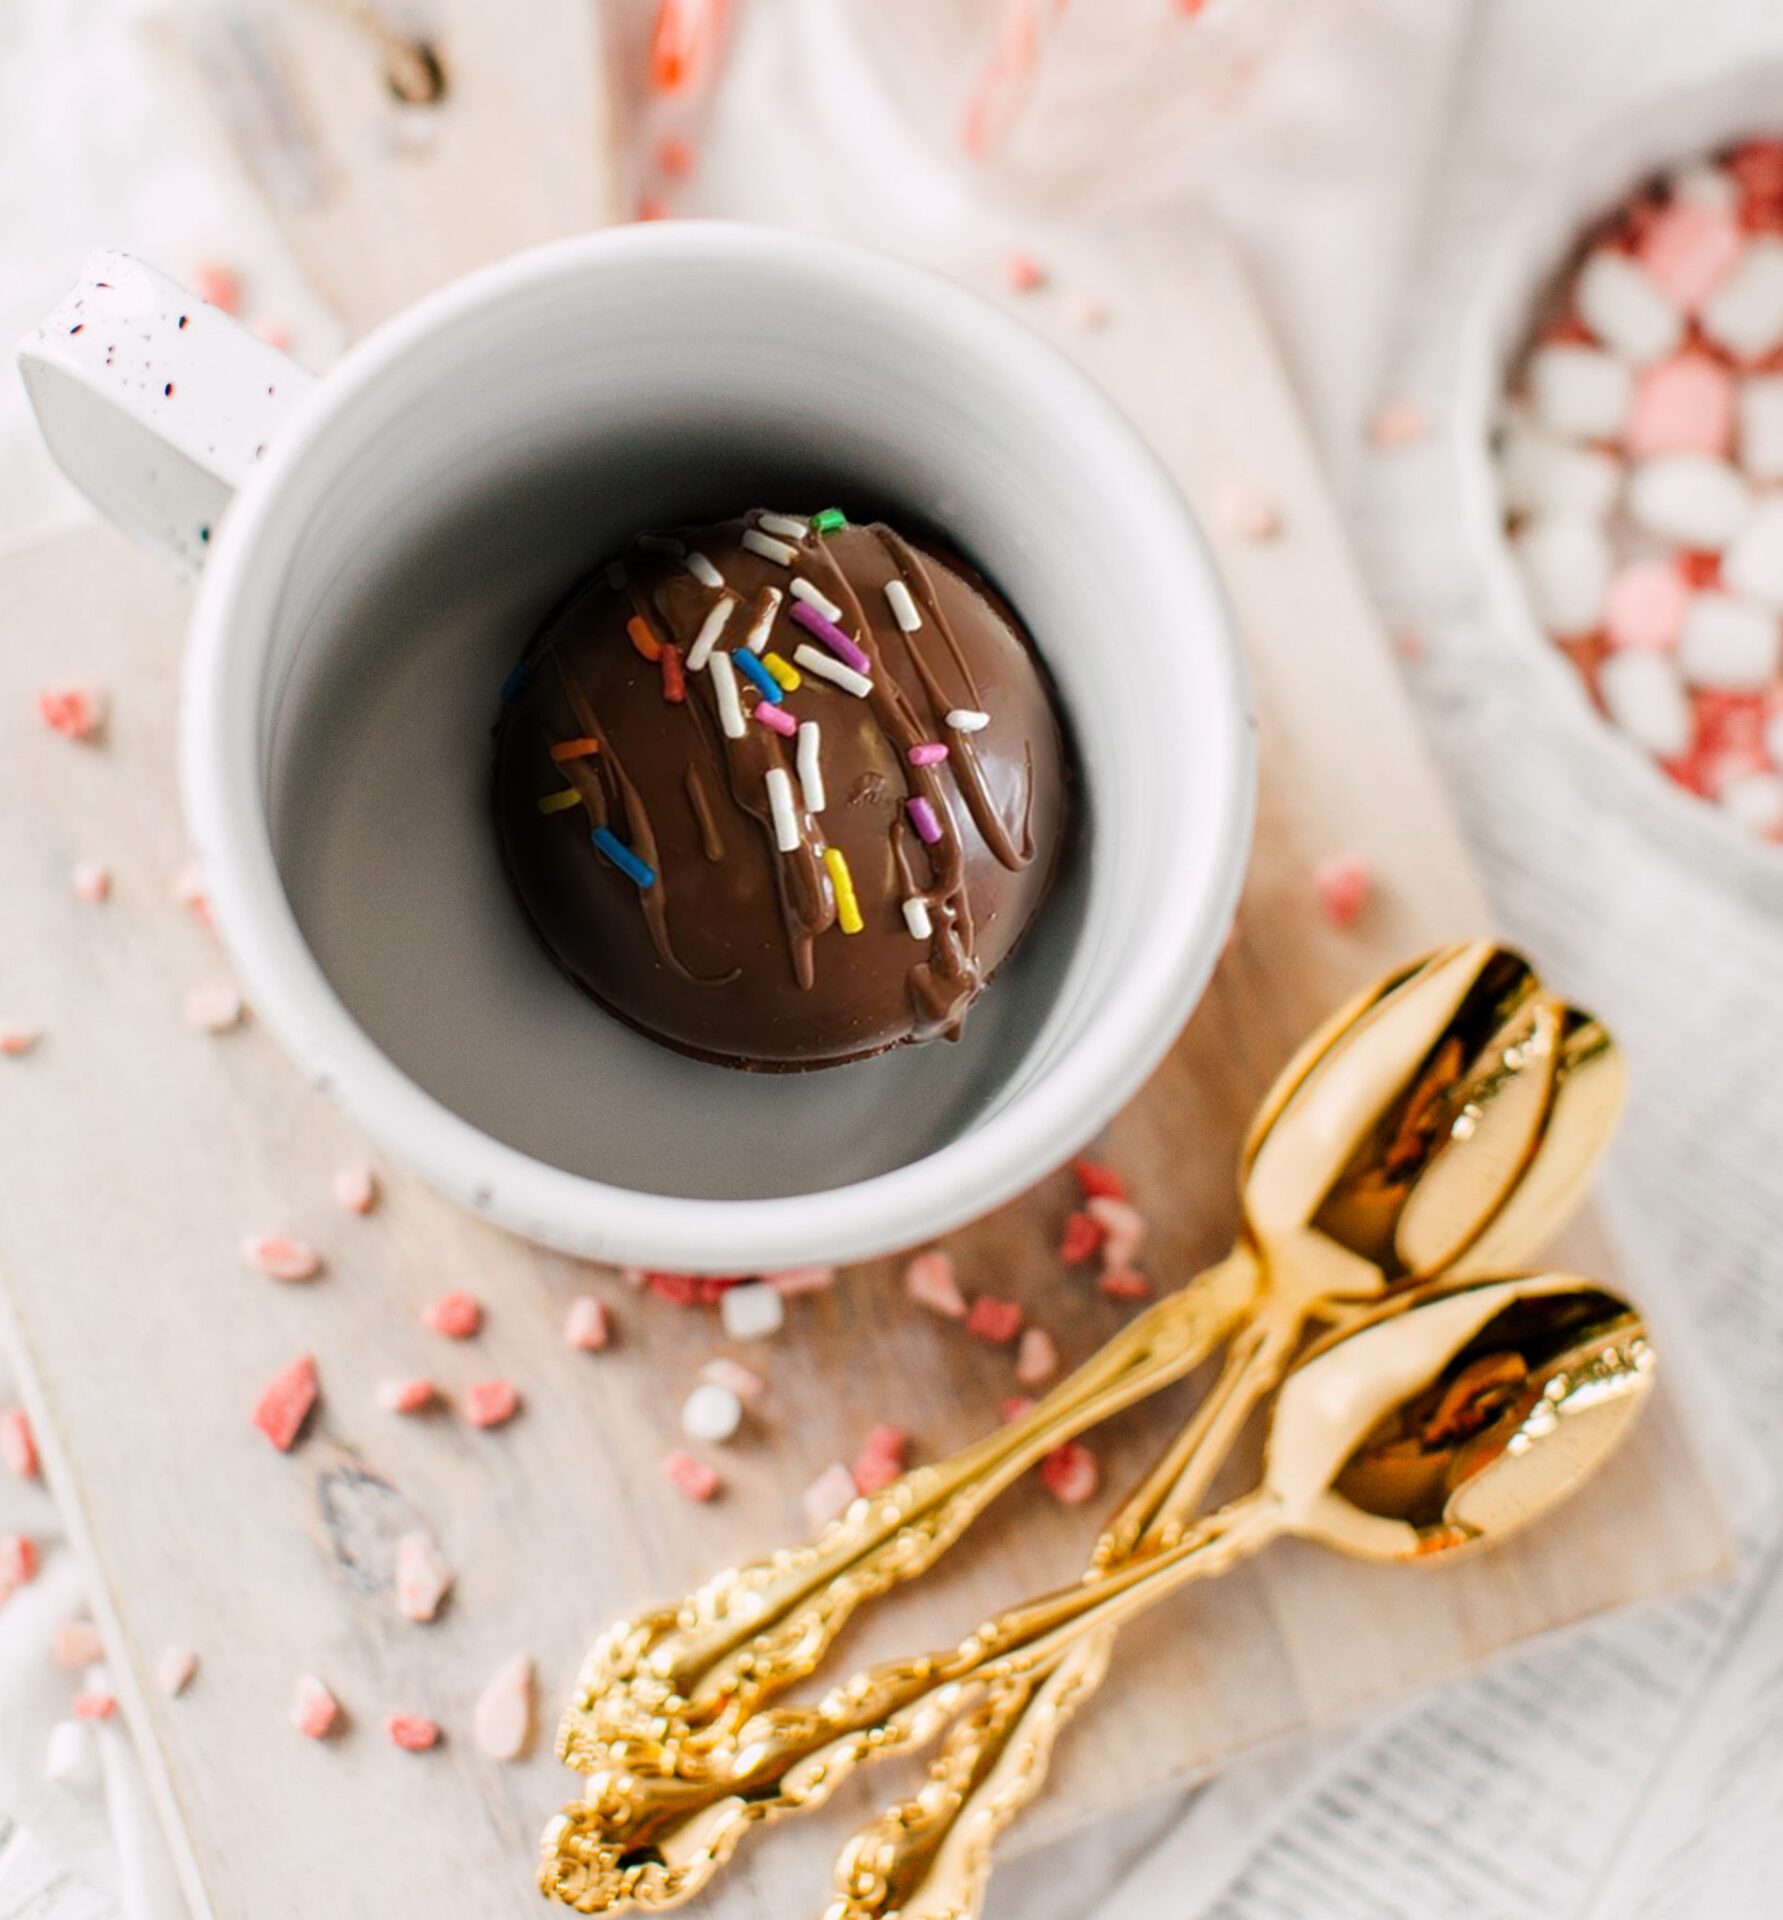 Bombes de chocolat chaud — Chocolats Favoris